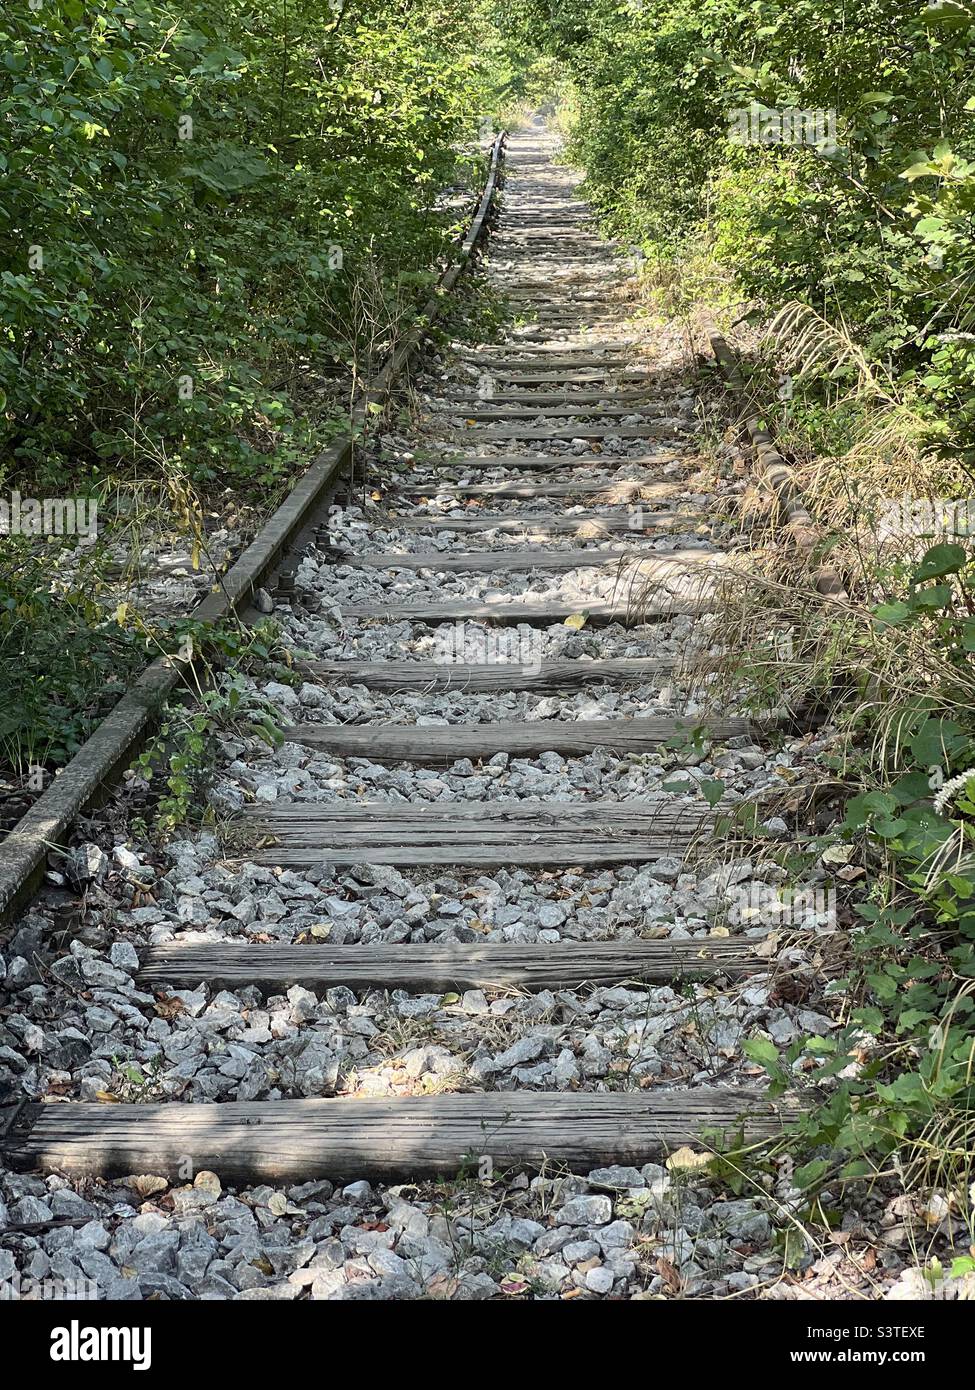 Vista de vías de ferrocarril abandonadas Foto de stock